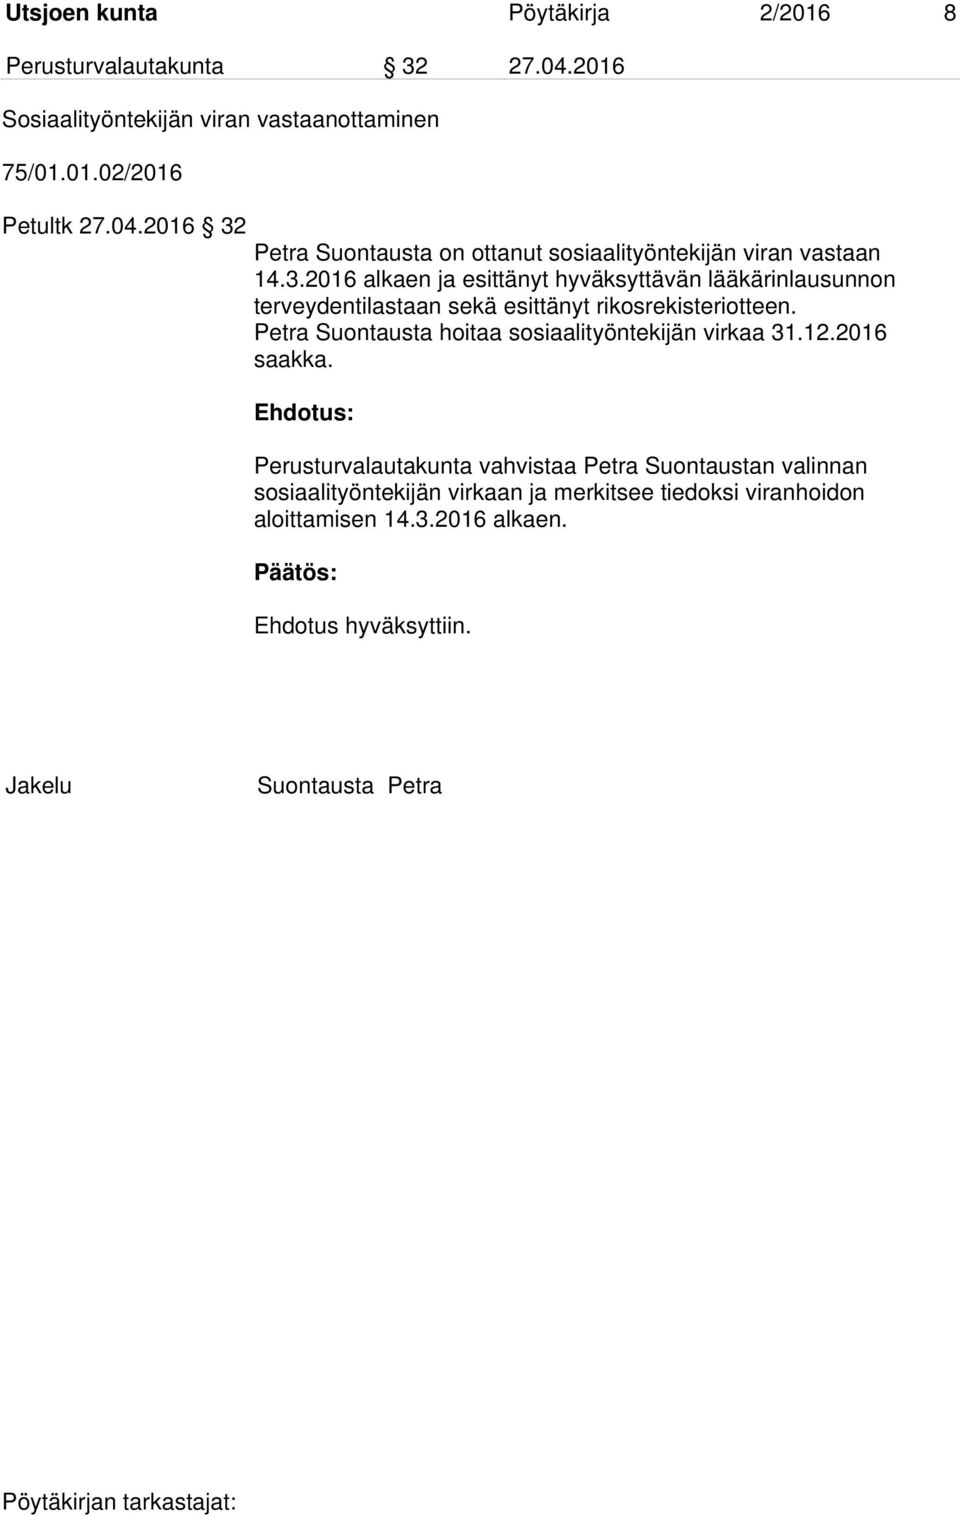 Petra Suontausta hoitaa sosiaalityöntekijän virkaa 31.12.2016 saakka.